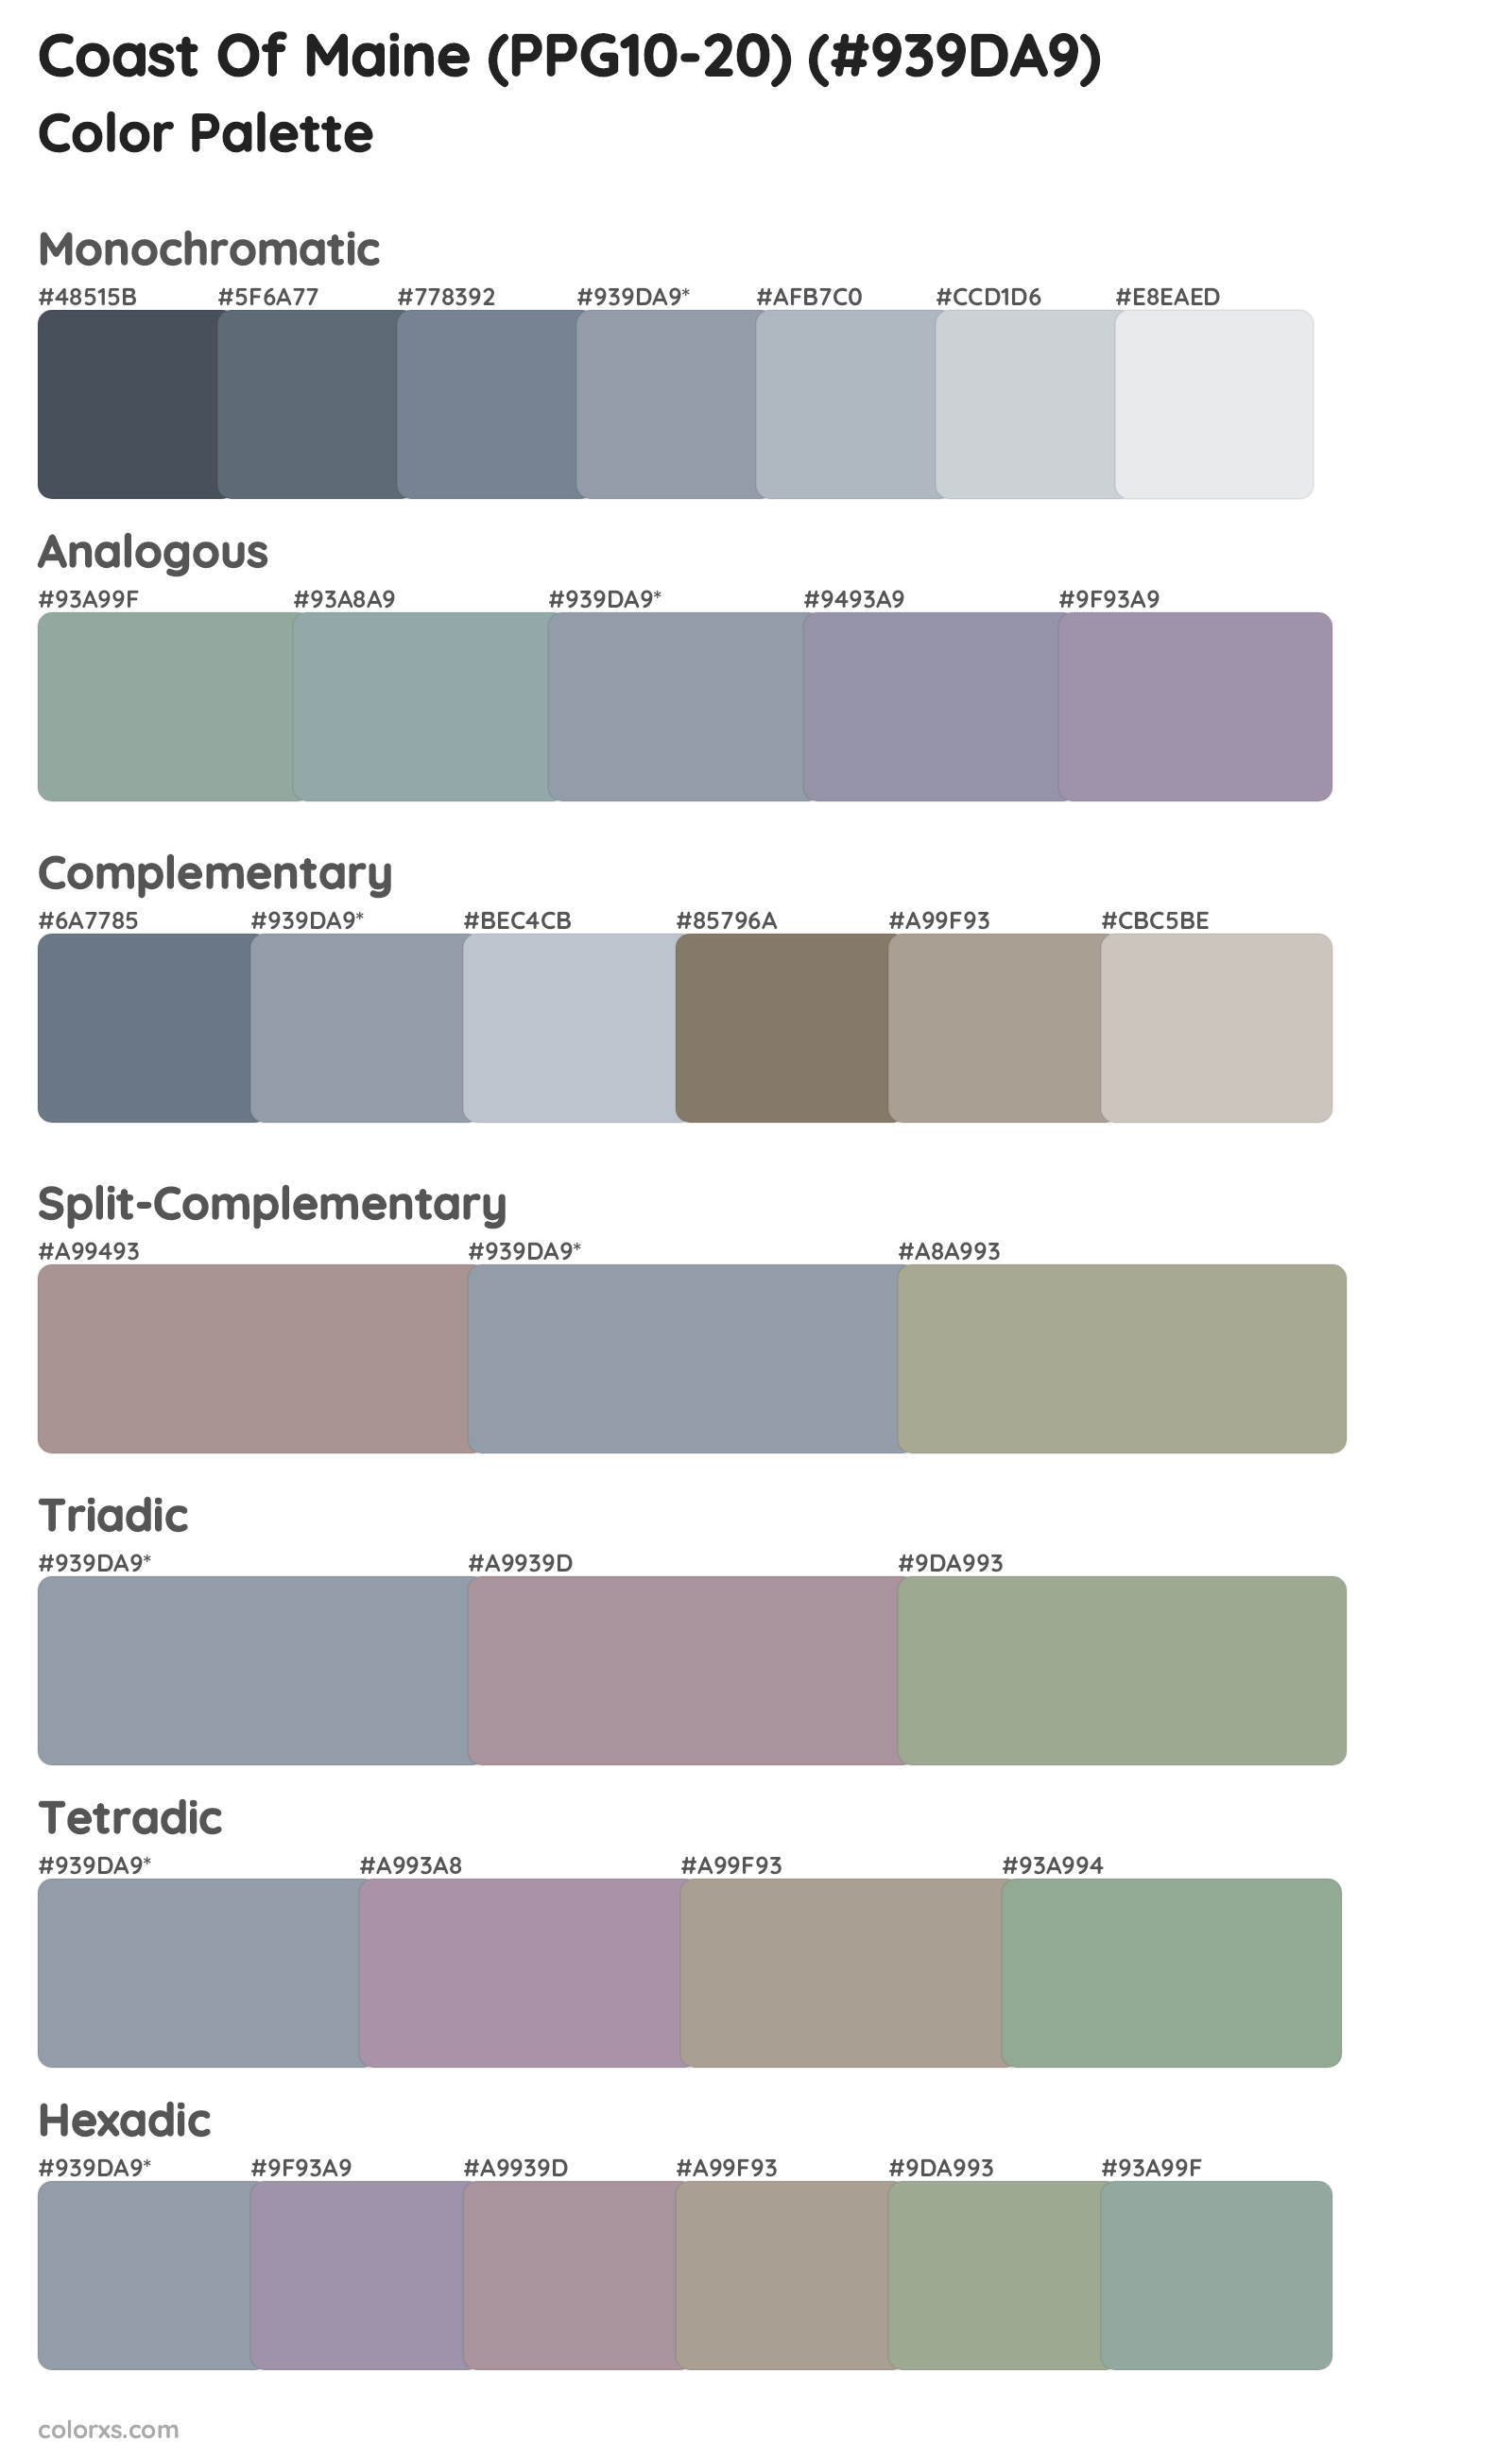 Coast Of Maine (PPG10-20) Color Scheme Palettes